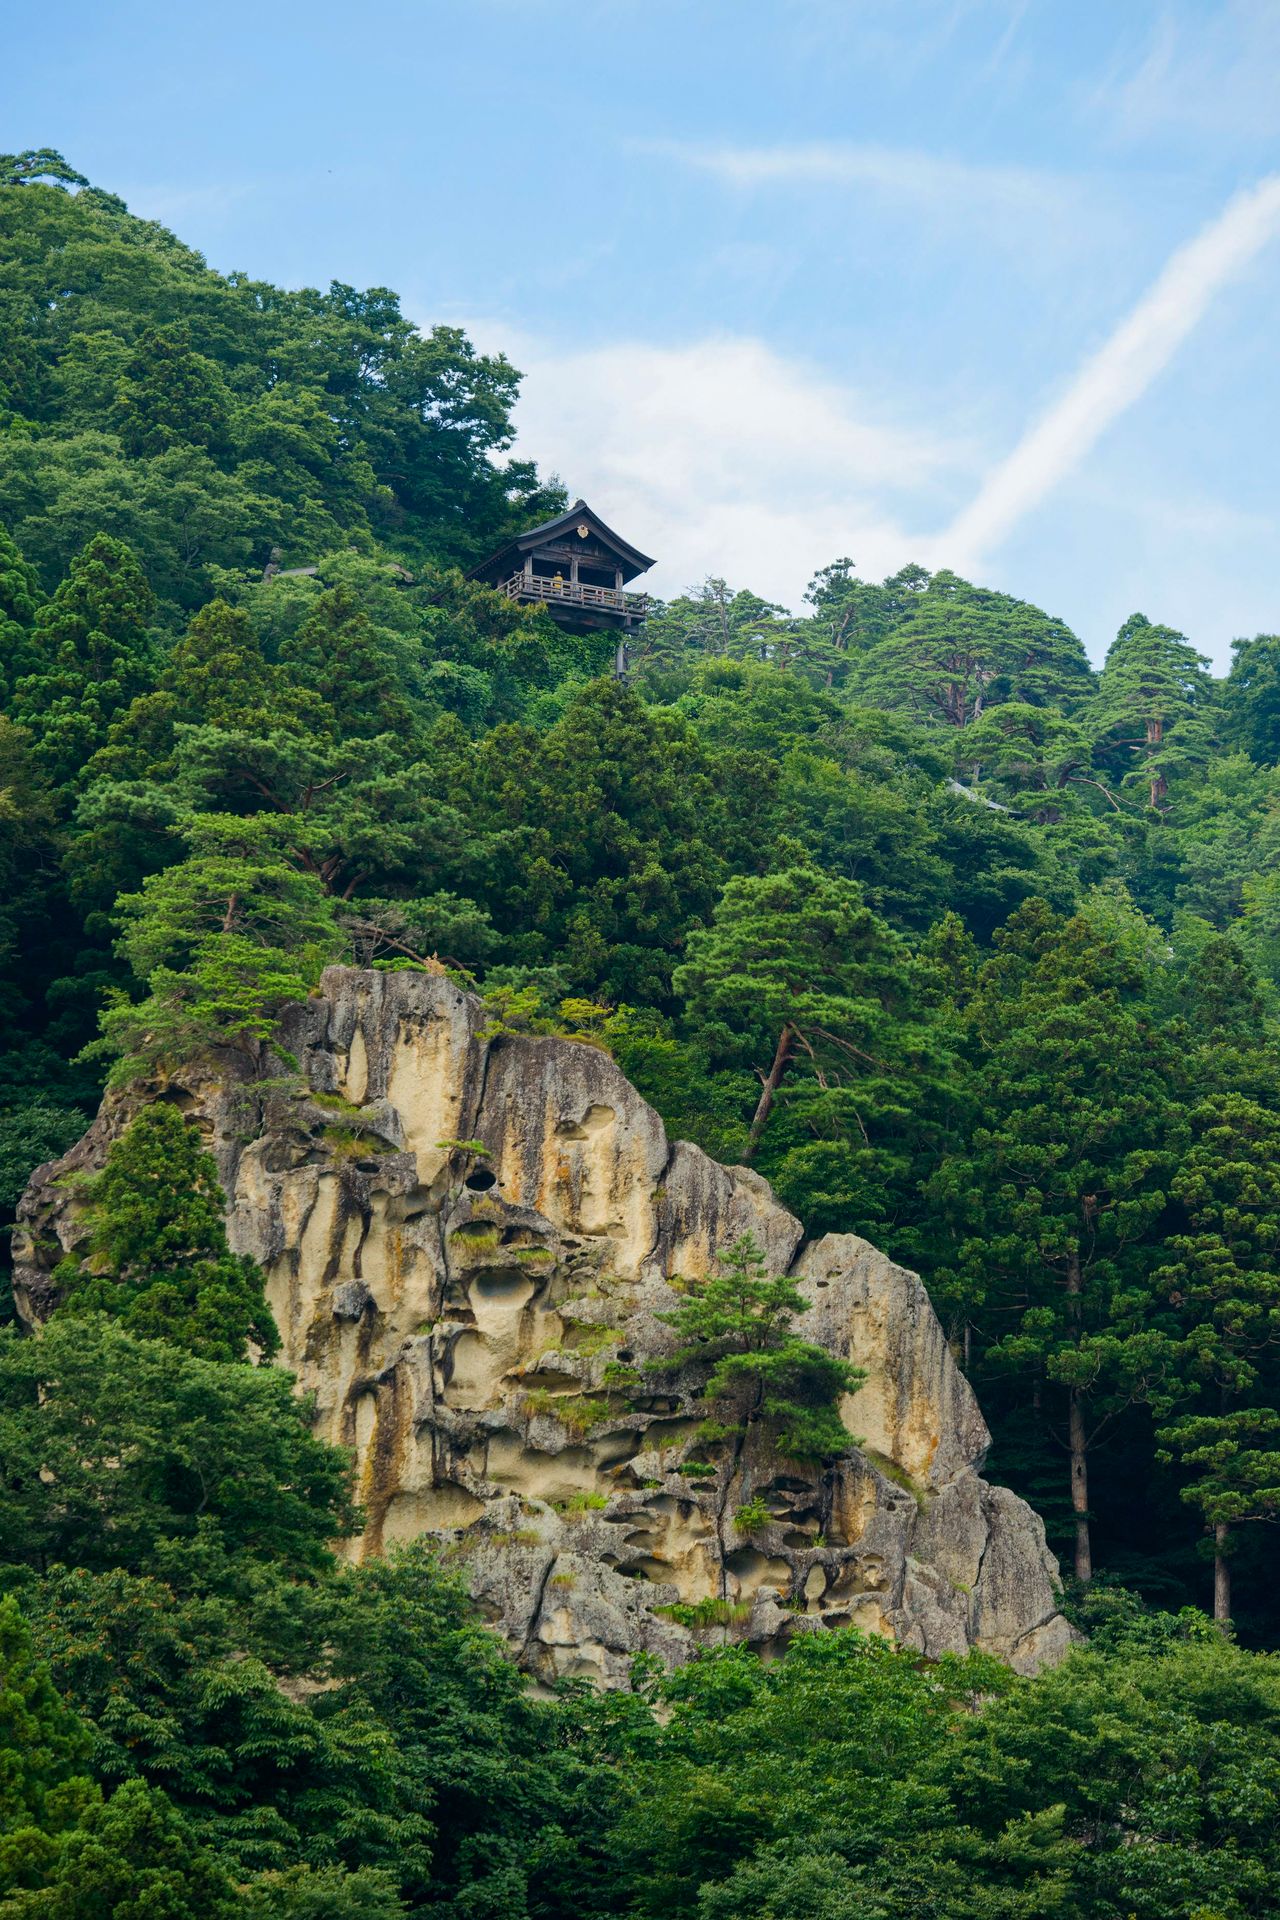 المعبد الصغير تاينايدو ينتصب على قمة جرف صخري، لا يمكن للمصلين العاديين الوصول إليه (الصورة بإذن من جمعية السياحة في ياماغاتا).